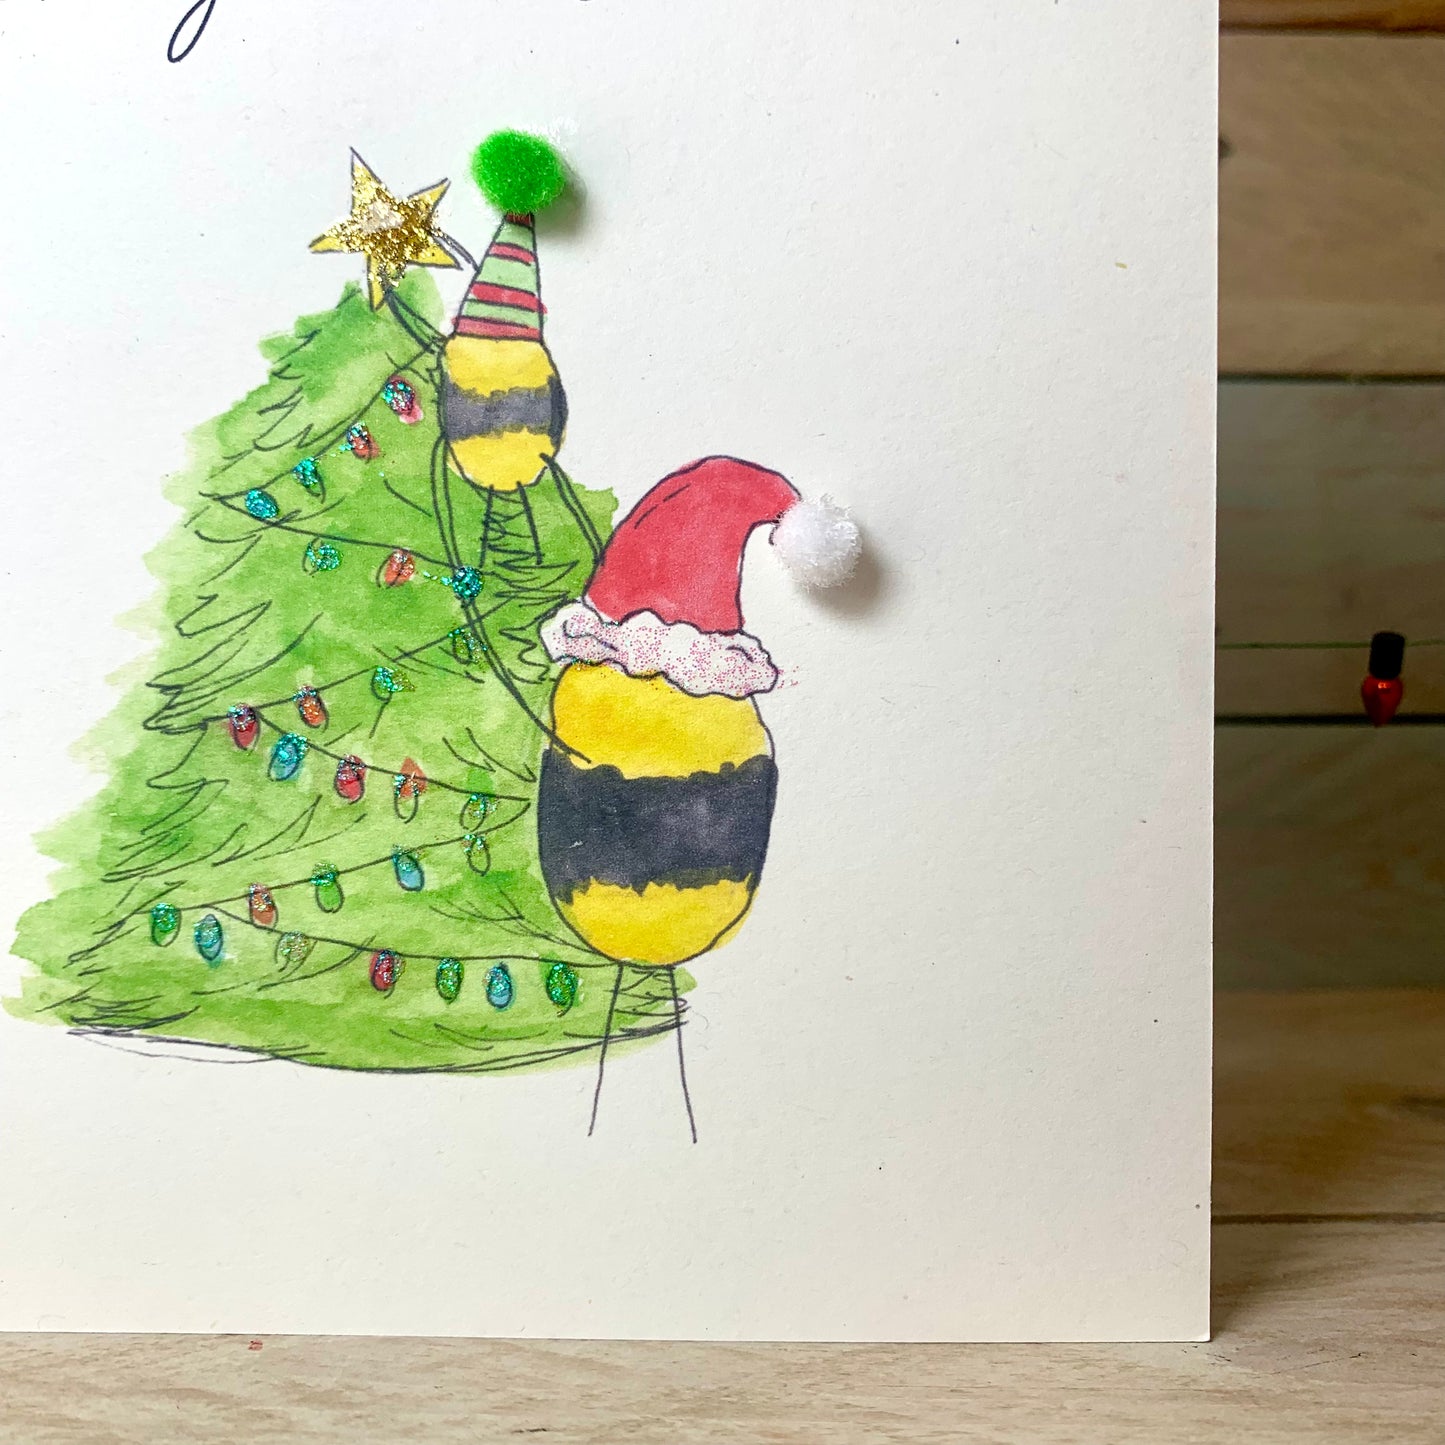 Christmas Bee's Christmas Card